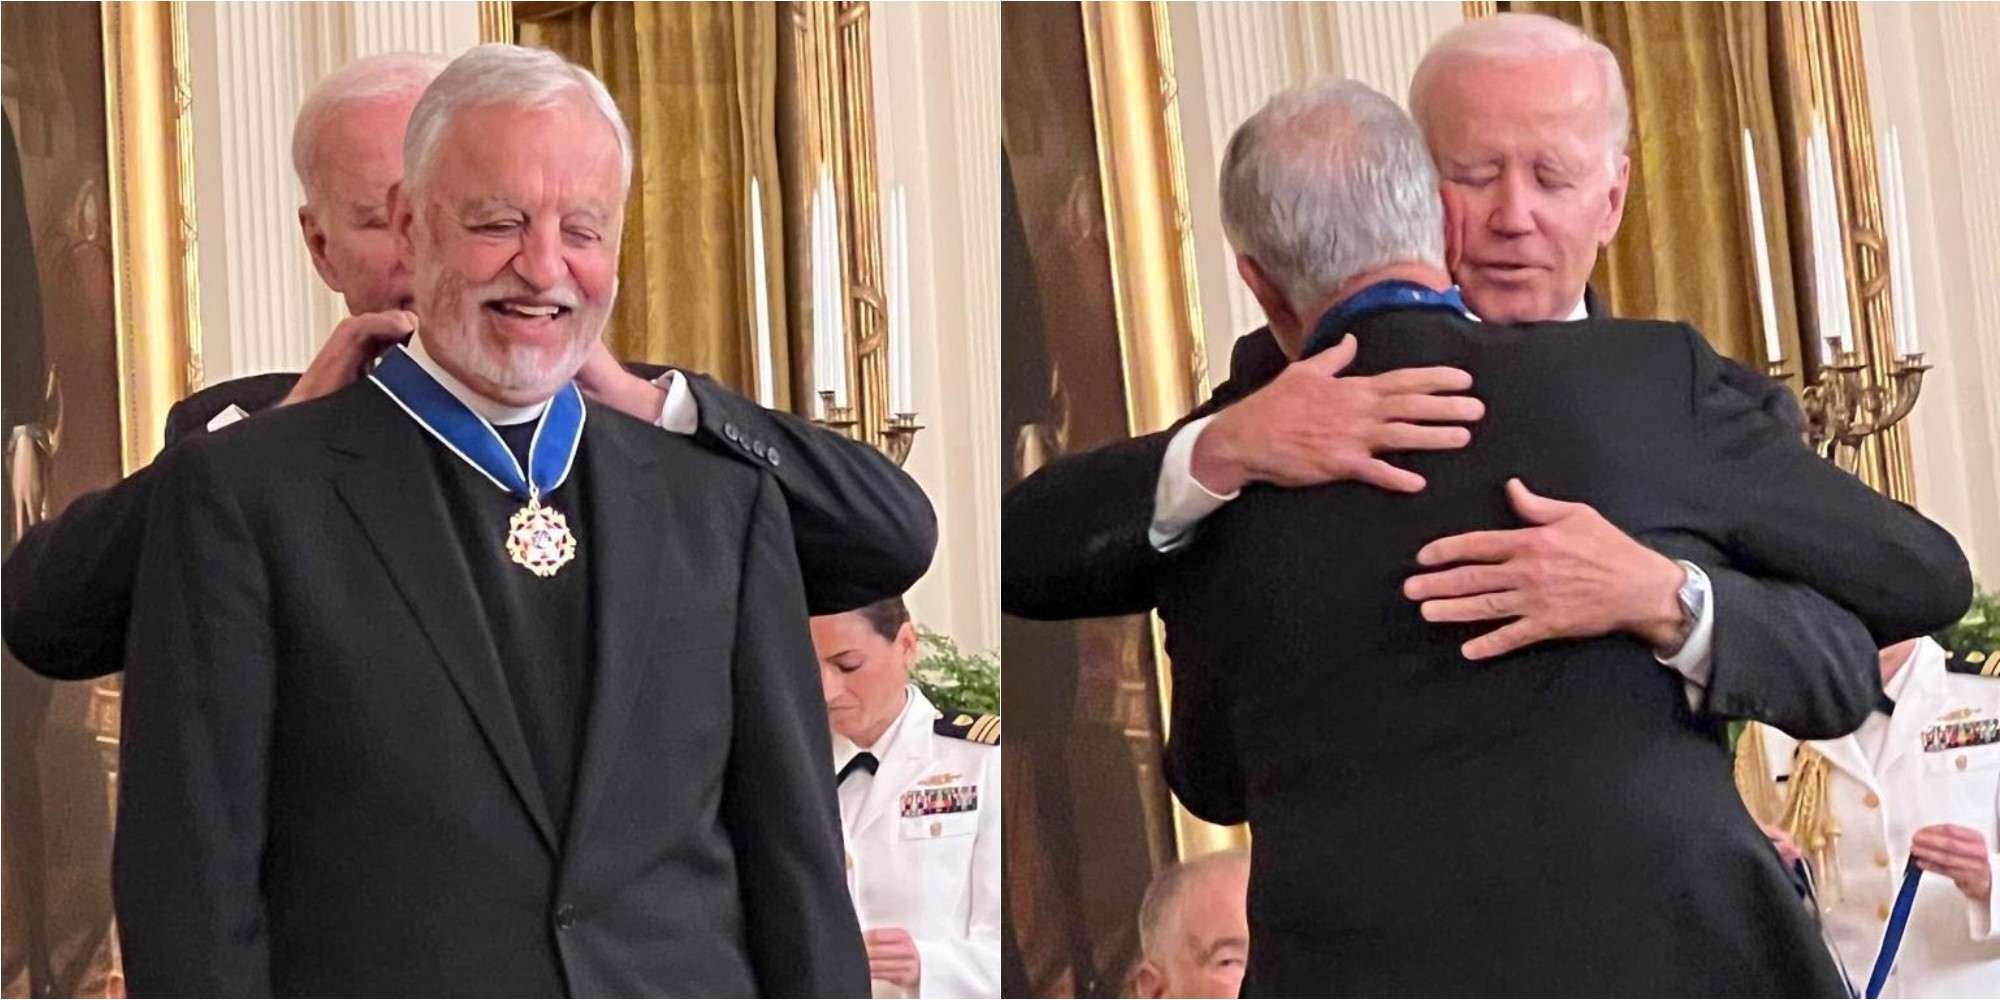 Ο Τζο Μπάιντεν τίμησε με το Προεδρικό Μετάλλιο Ελευθερίας τον πάτερ Άλεξ Καρλούτσο